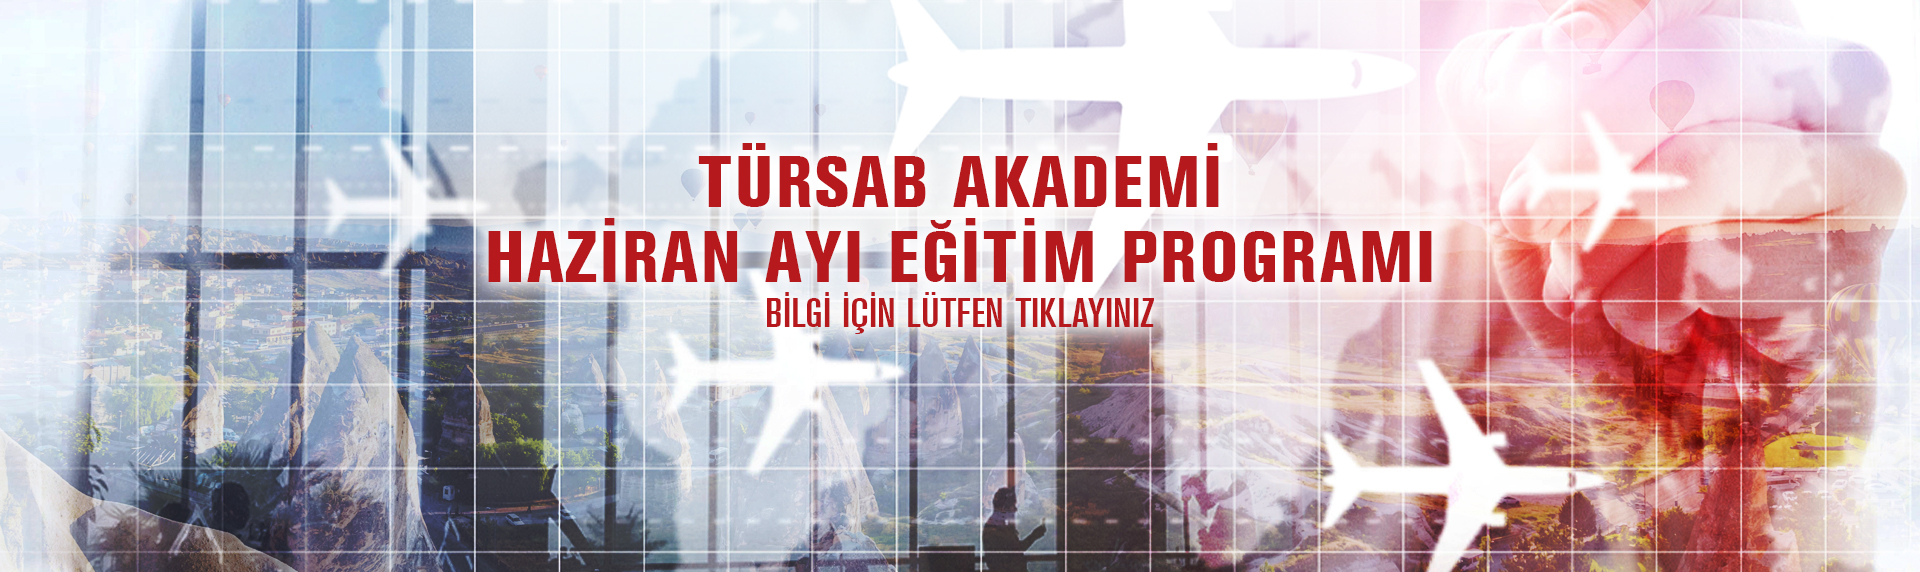 https://www.tursab.org.tr/duyurular/tursab-akademi-mayis-ayi-egitim-programi